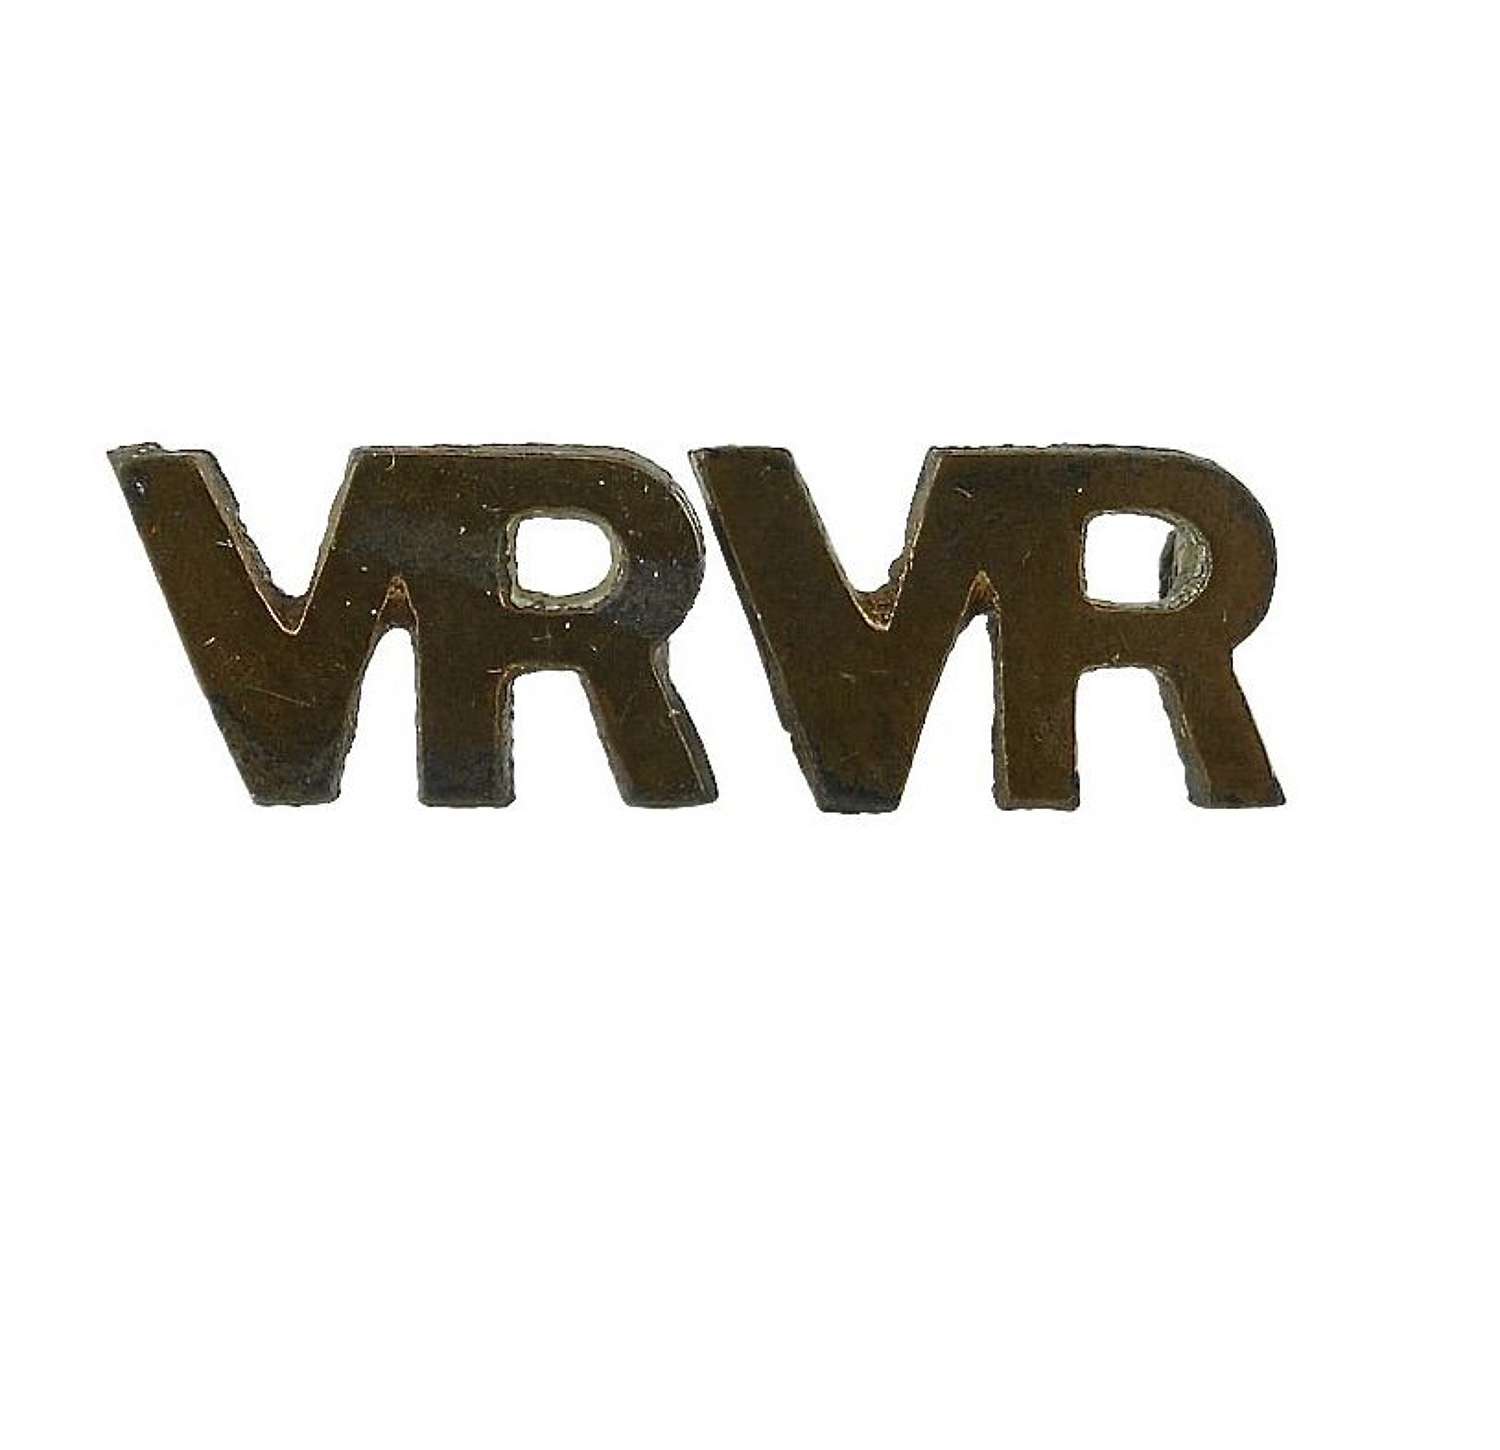 RAF VR insignia